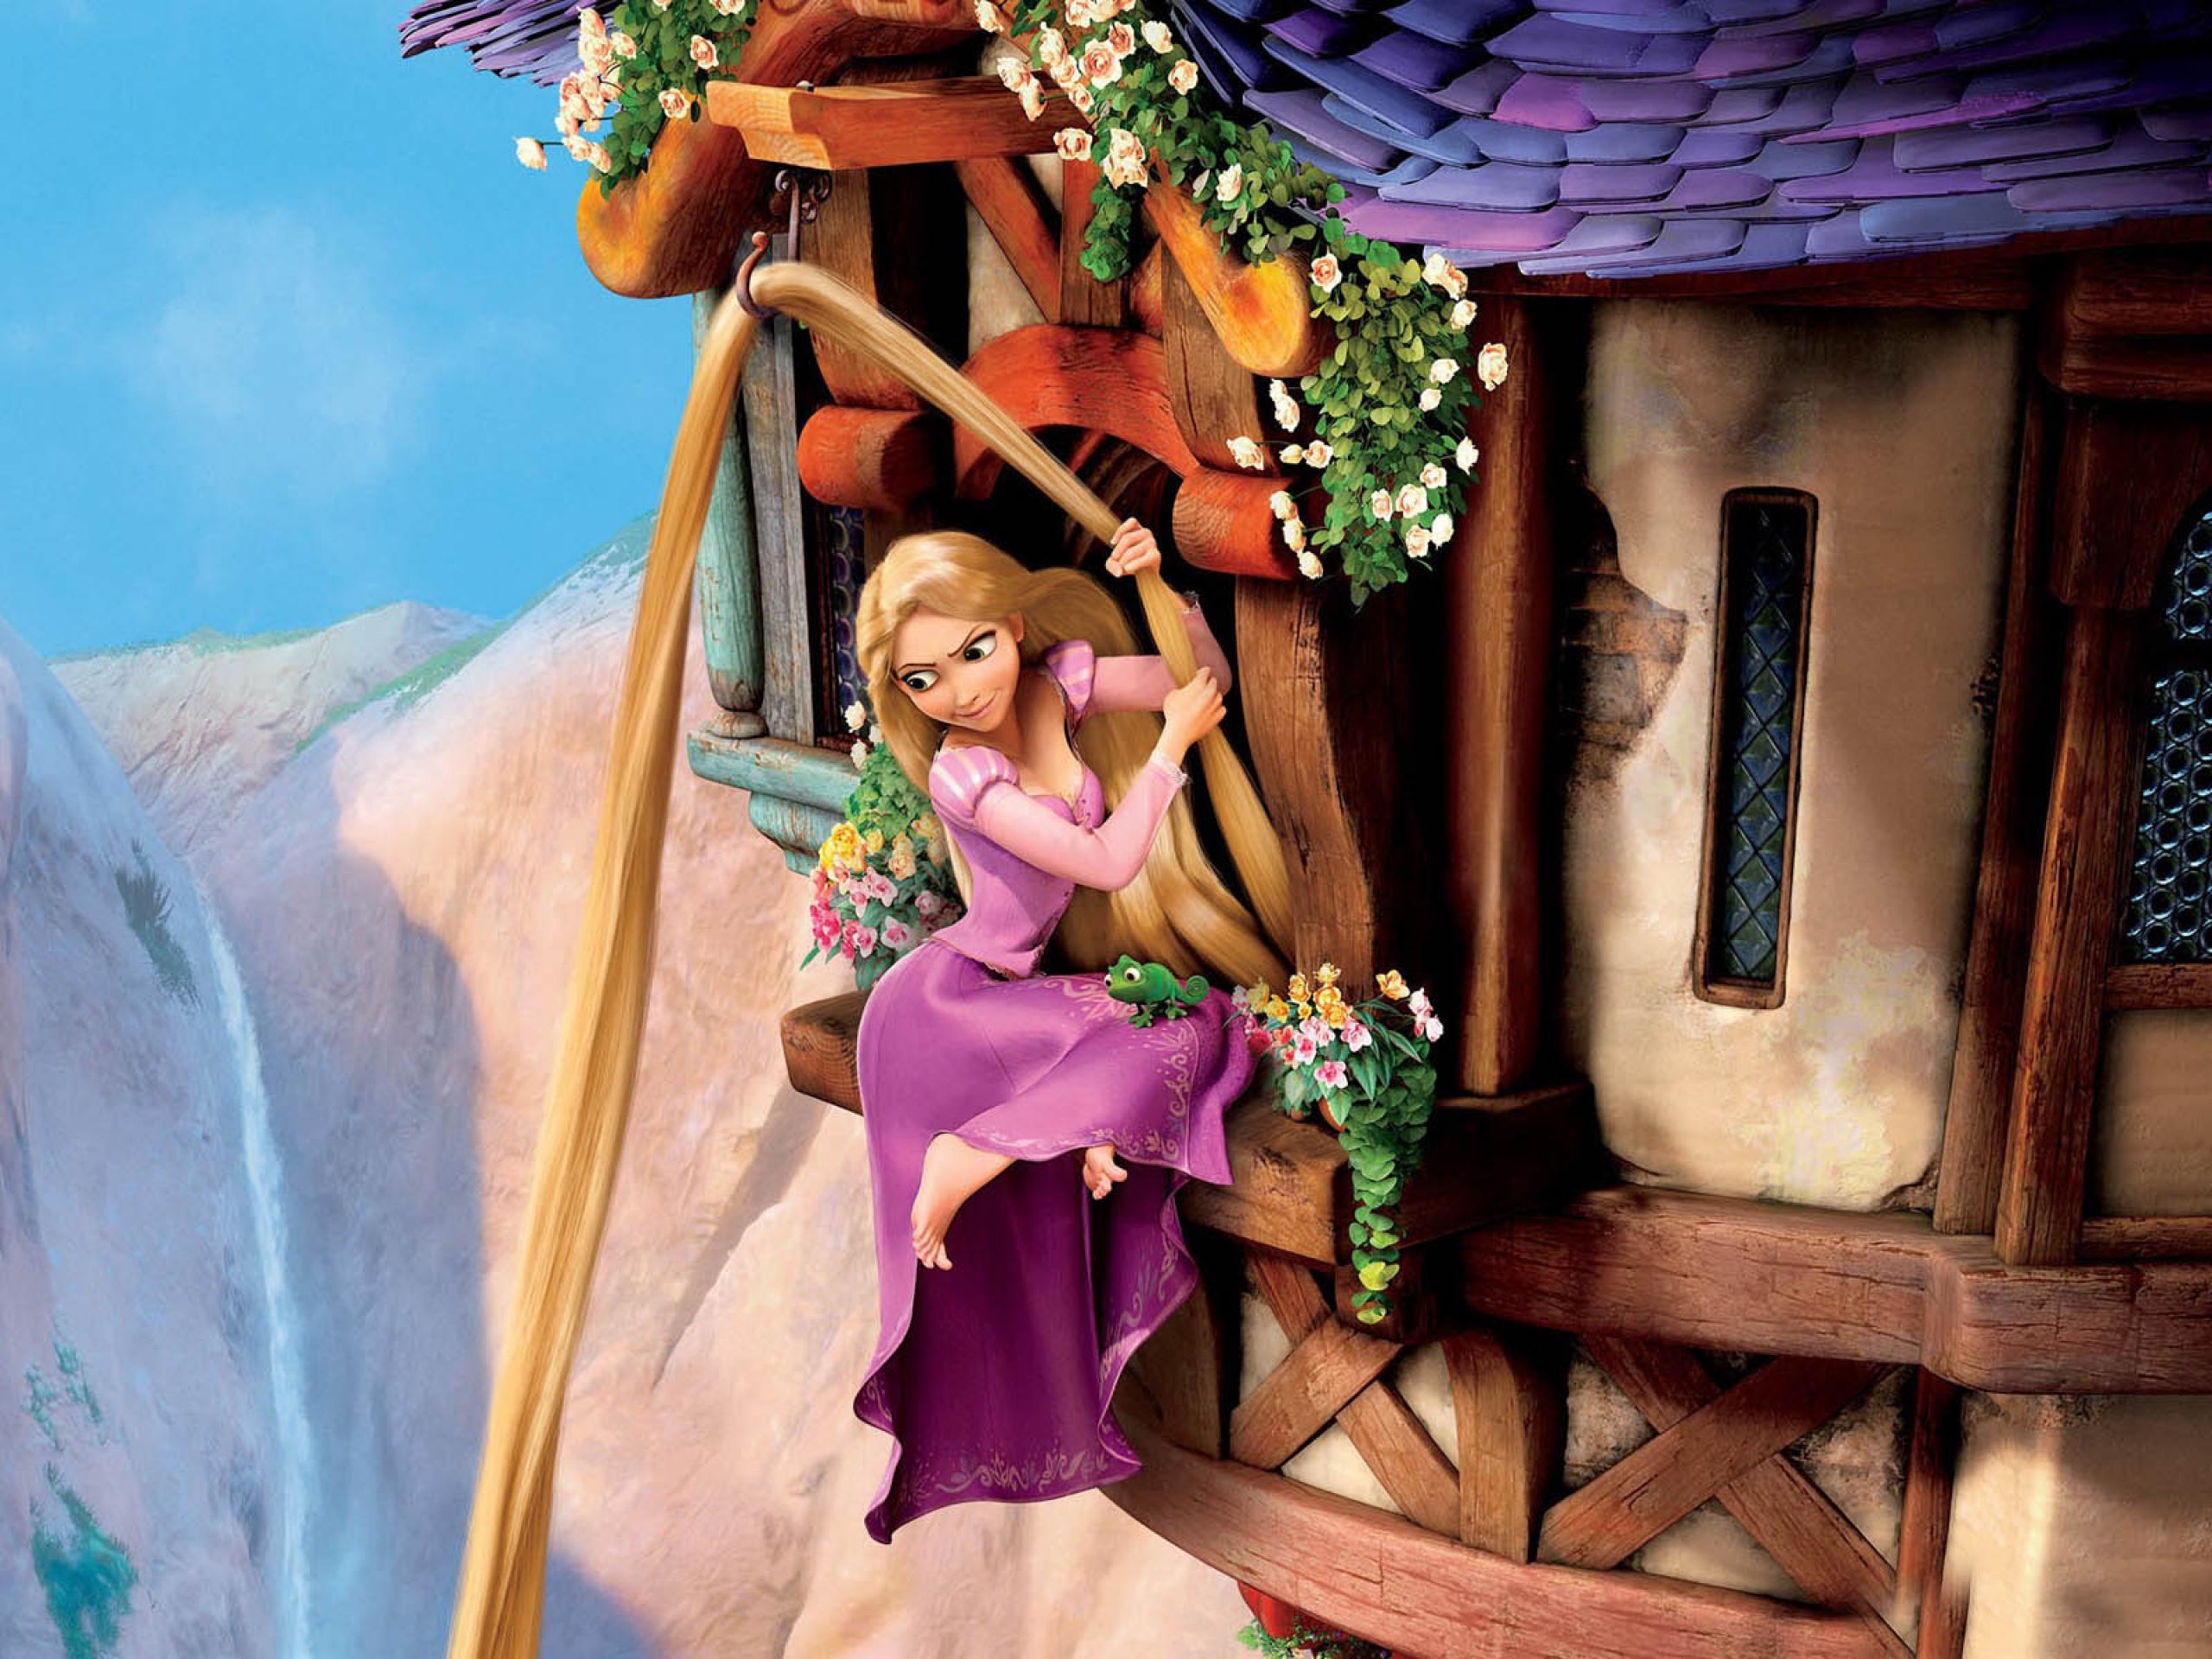 download wallpaper: Rapunzel in haar toren wallpaper